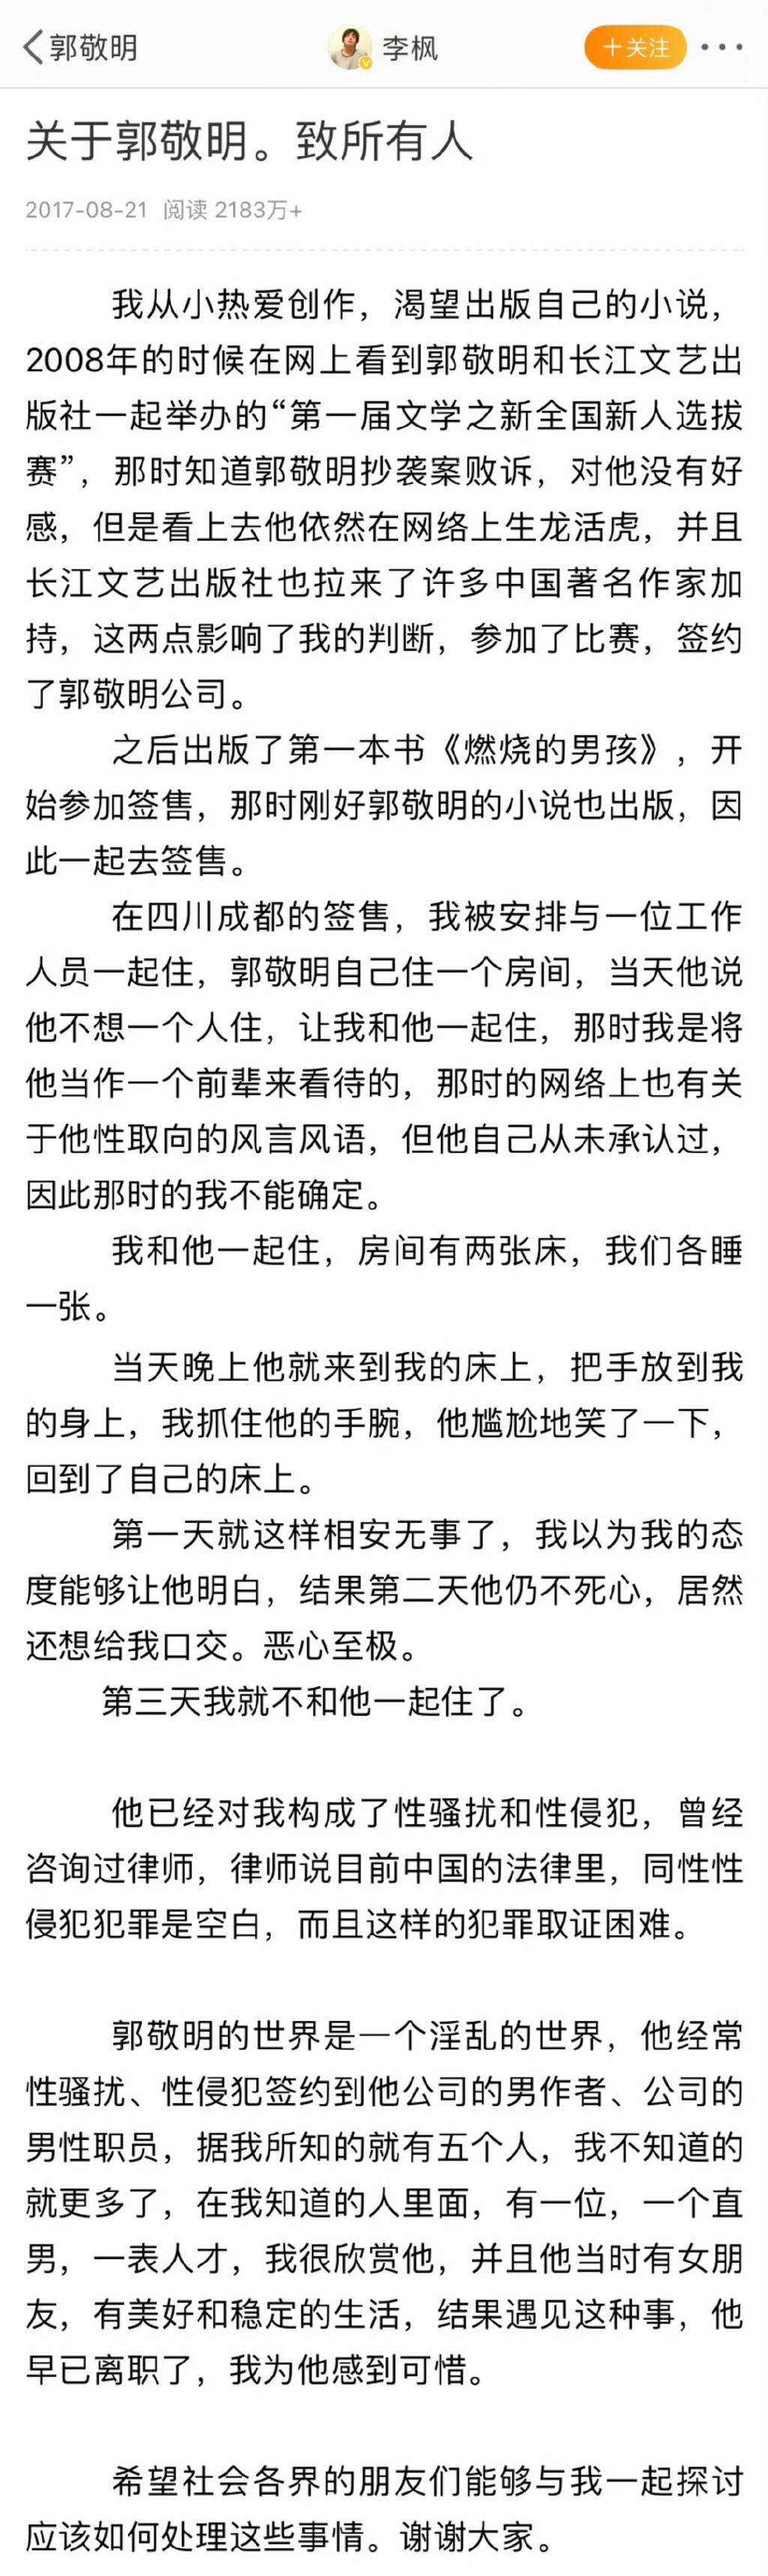 李枫再发文称郭敬明事件是性骚扰 曾于2017年发文指控